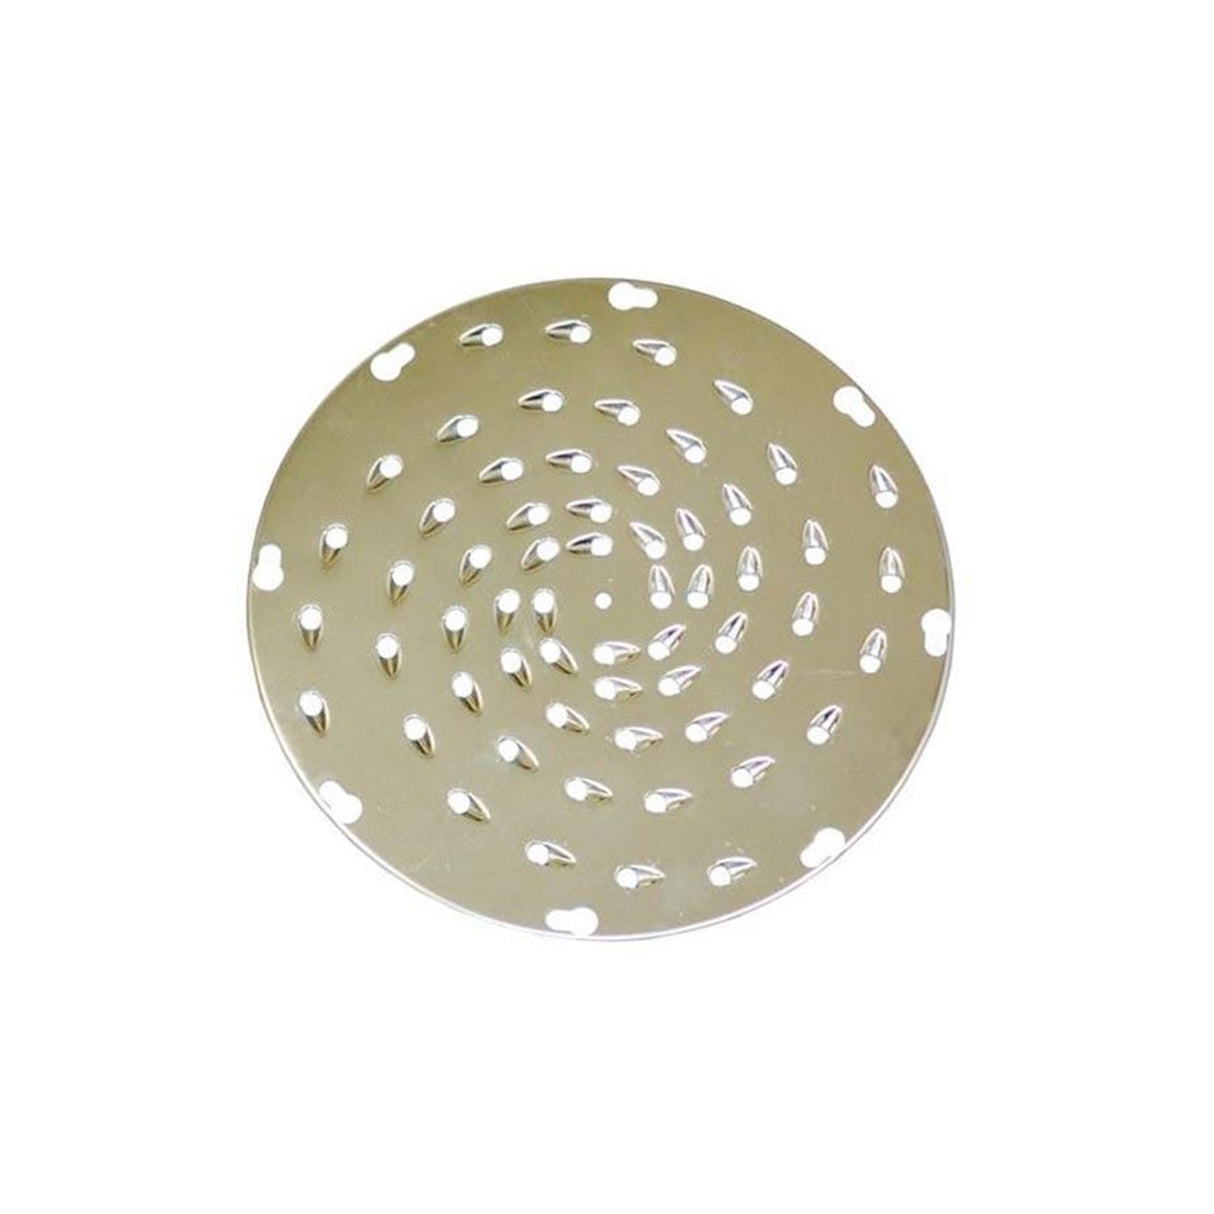 UVS-9140 | S/Steel Shredder Disc, 1/4" Holes